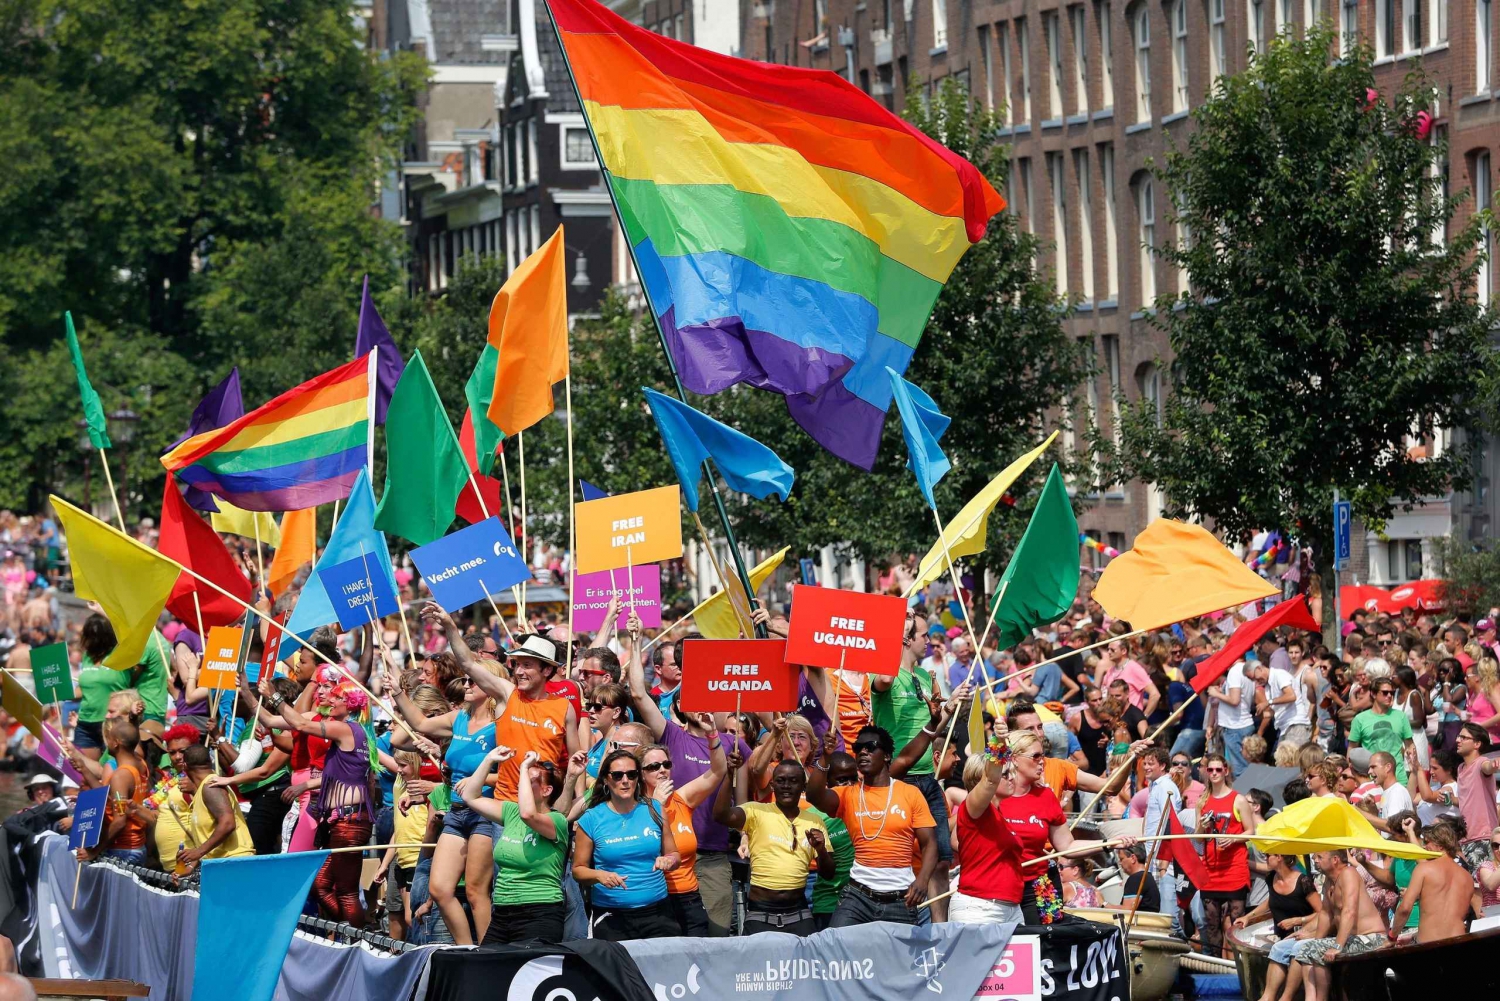 LGBTQ Amsterdam Private City Walk Tour